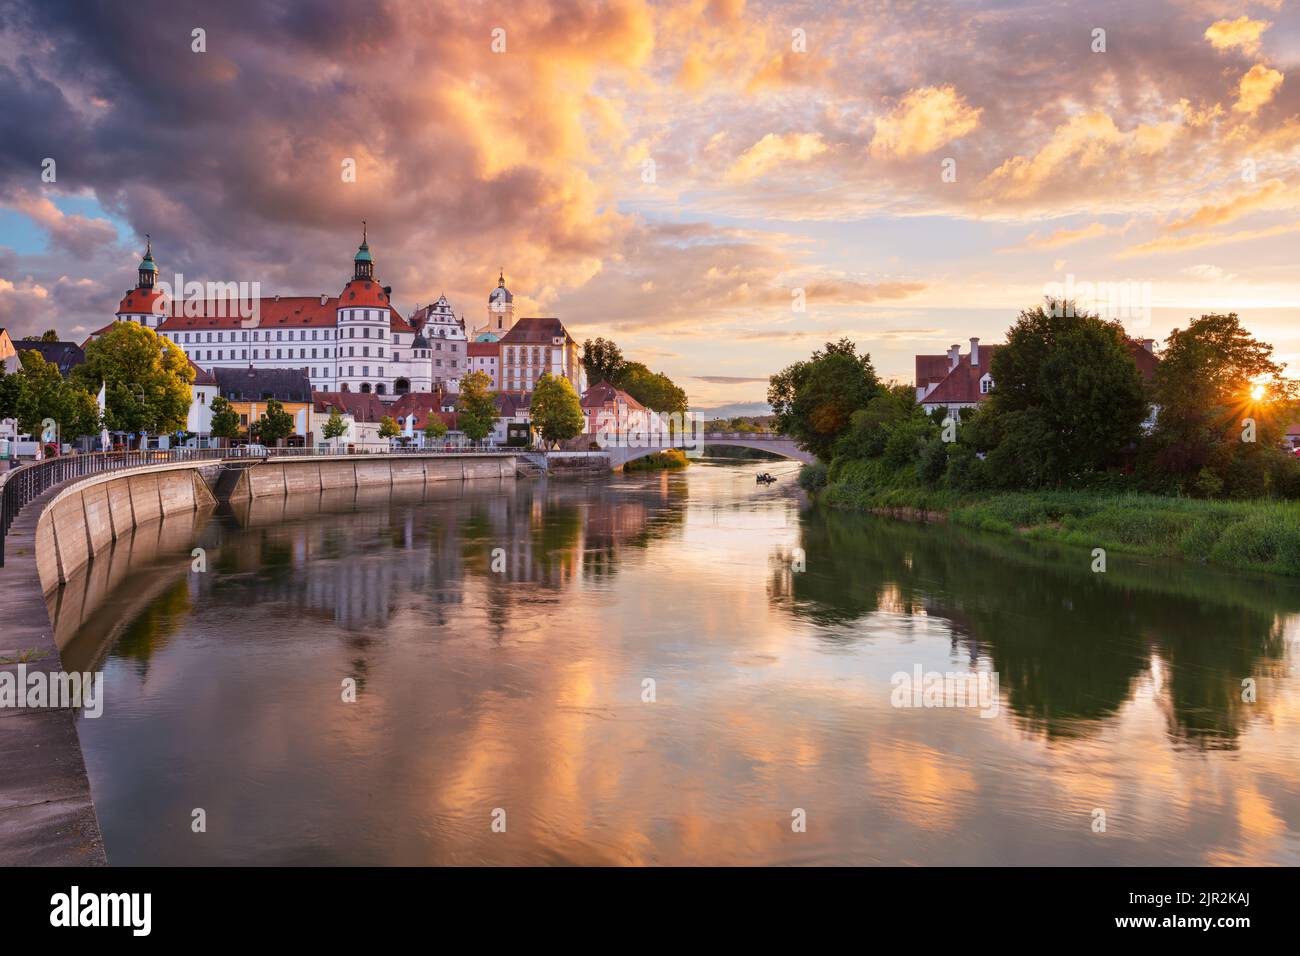 Neuburg an der Donau, Germania. Immagine del paesaggio urbano di Neuburg an der Donau, Germania al tramonto estivo. Foto Stock